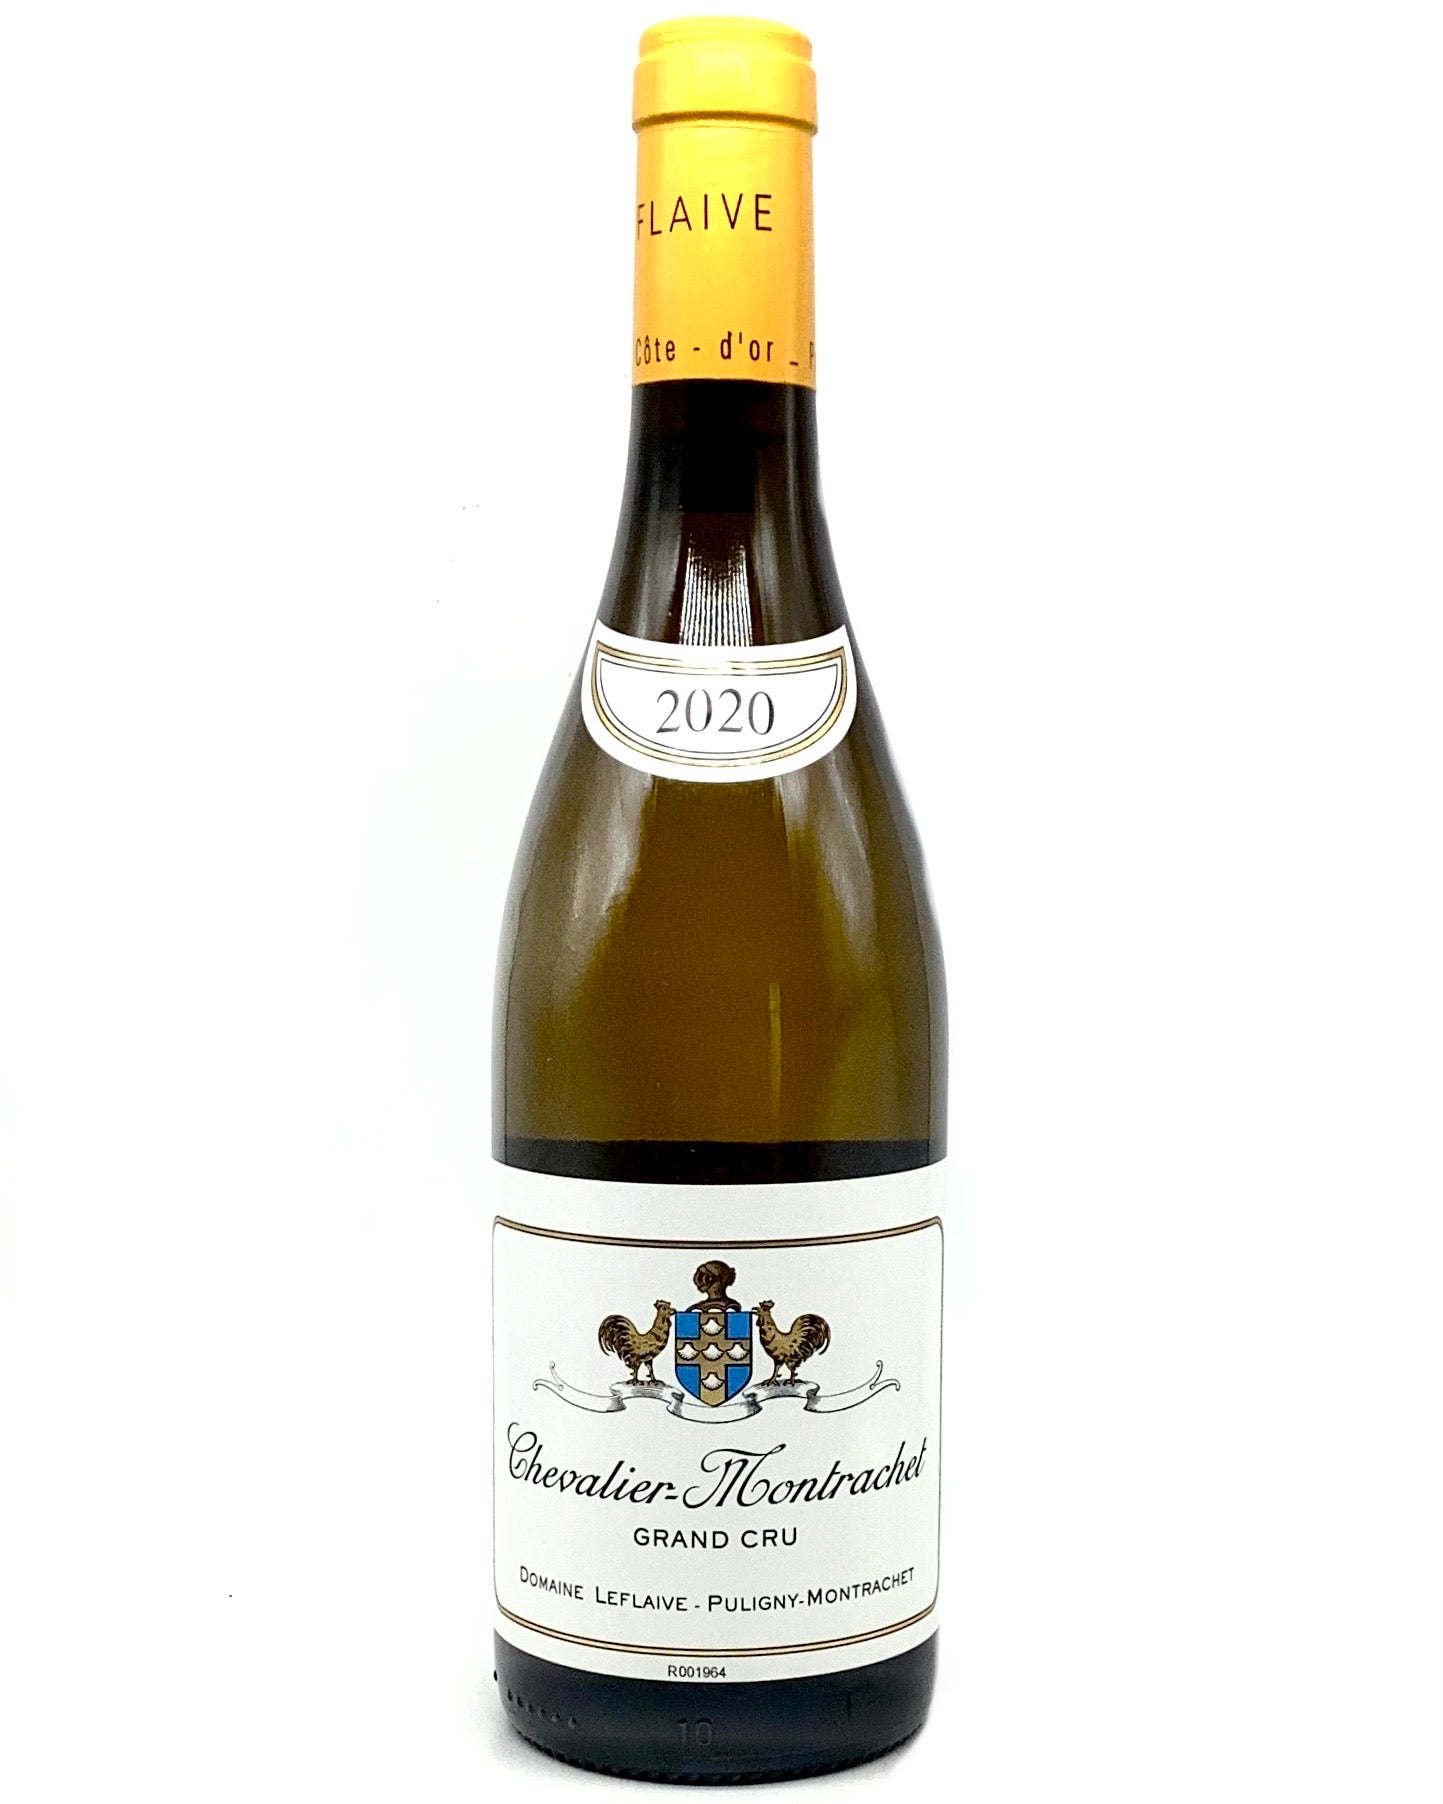 Domaine Leflaive, Chardonnay, Chevalier-Montrachet Grand Cru, Côte de Beaune, France 2020